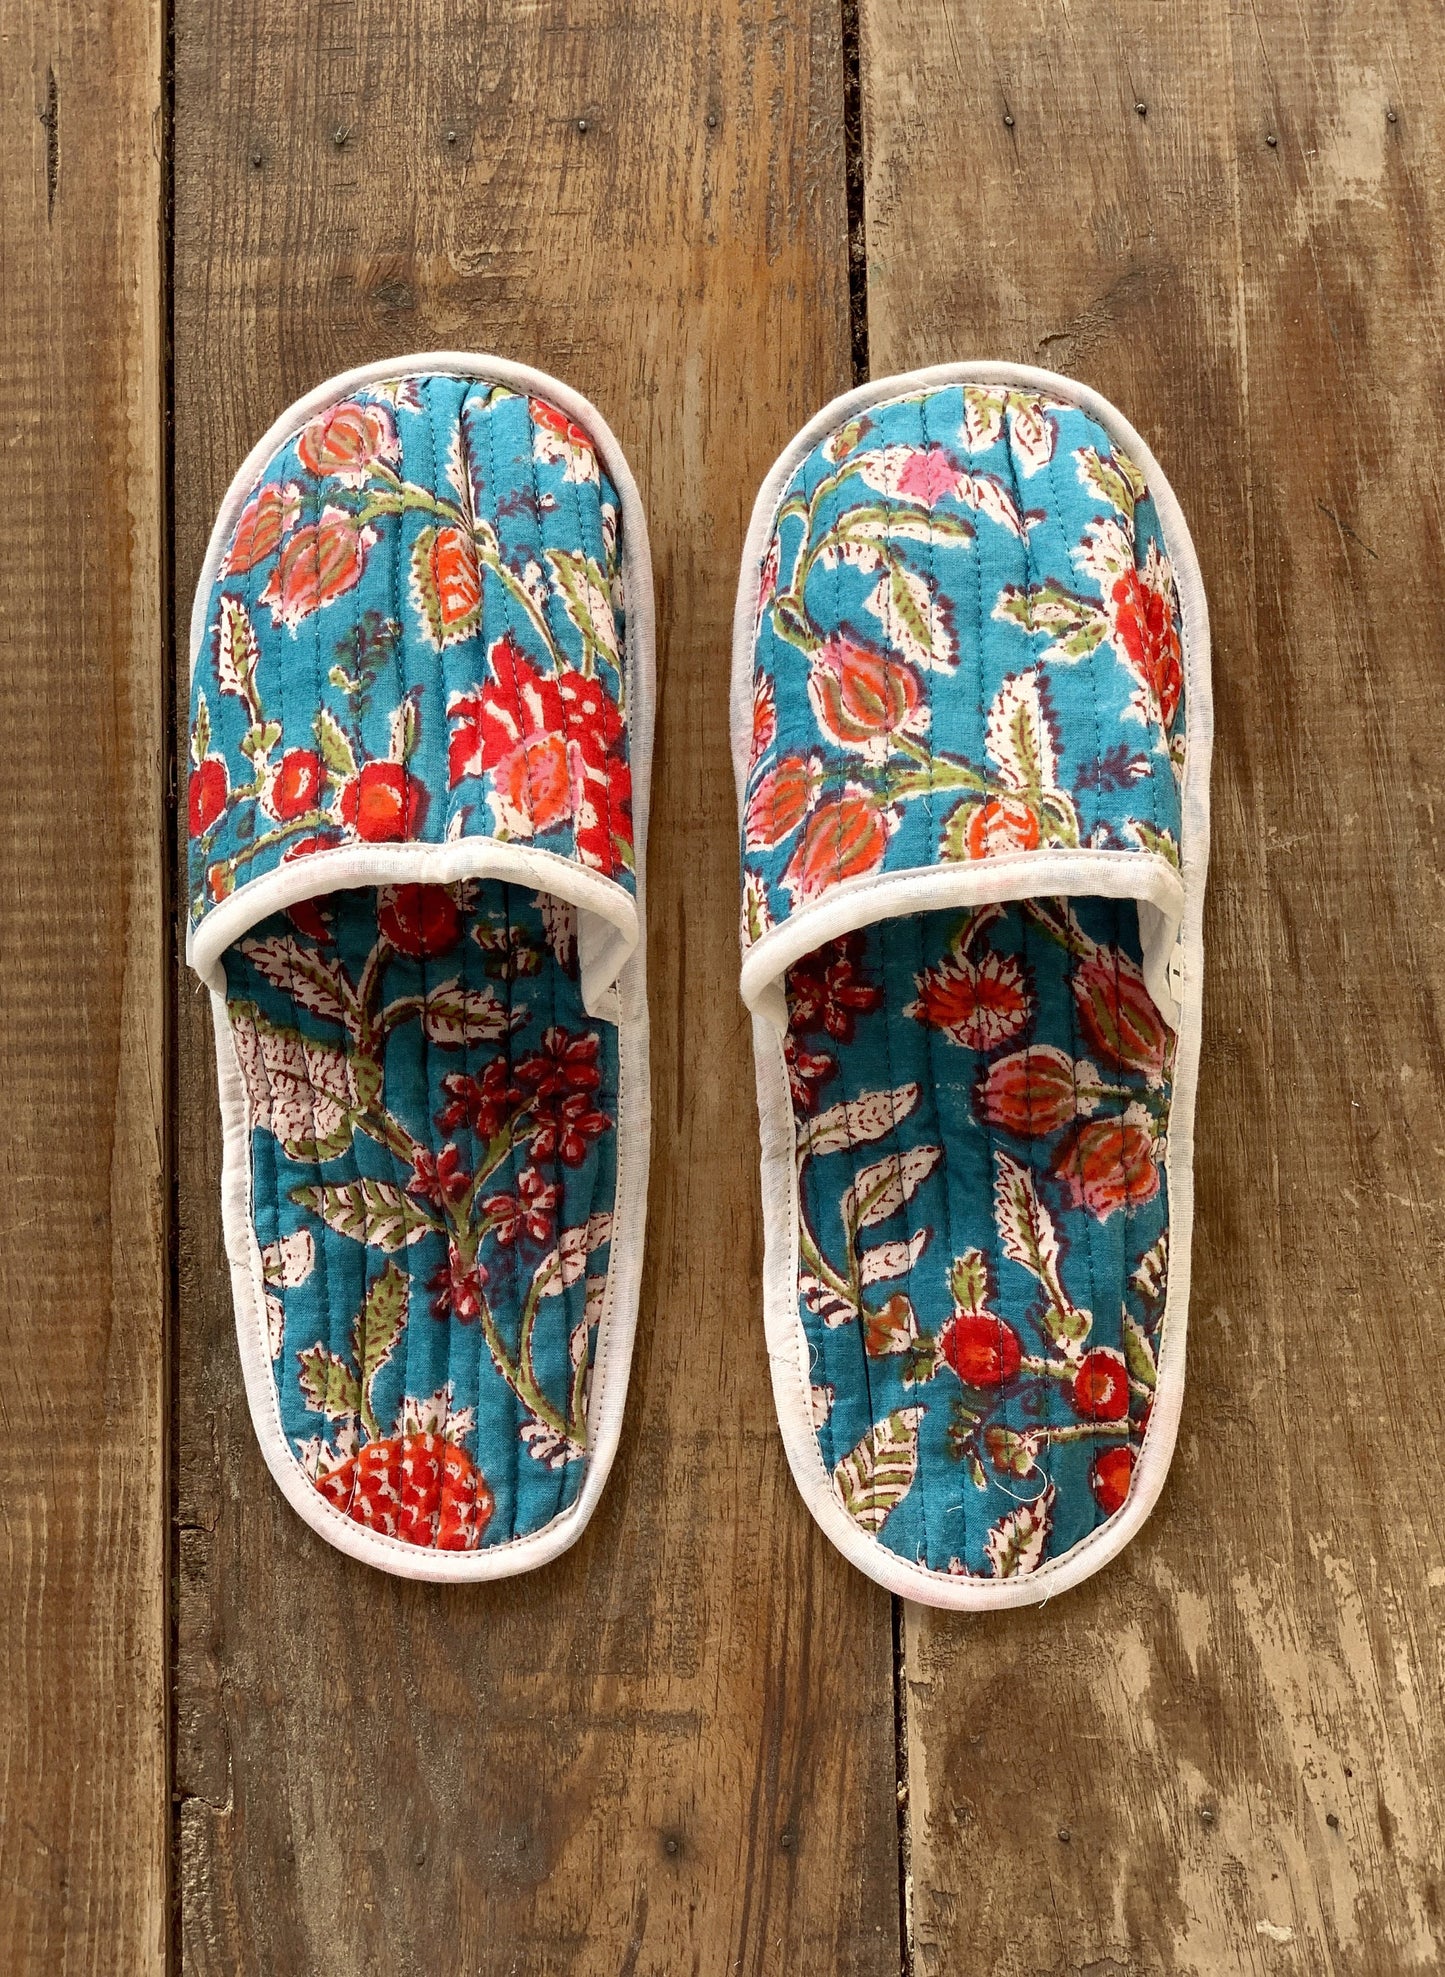 Zapatillas de viaje enguatadas con bolsa a juego · Algodón puro estampado block print en India · Zapatillas de baño ducha · Azul flor rosa